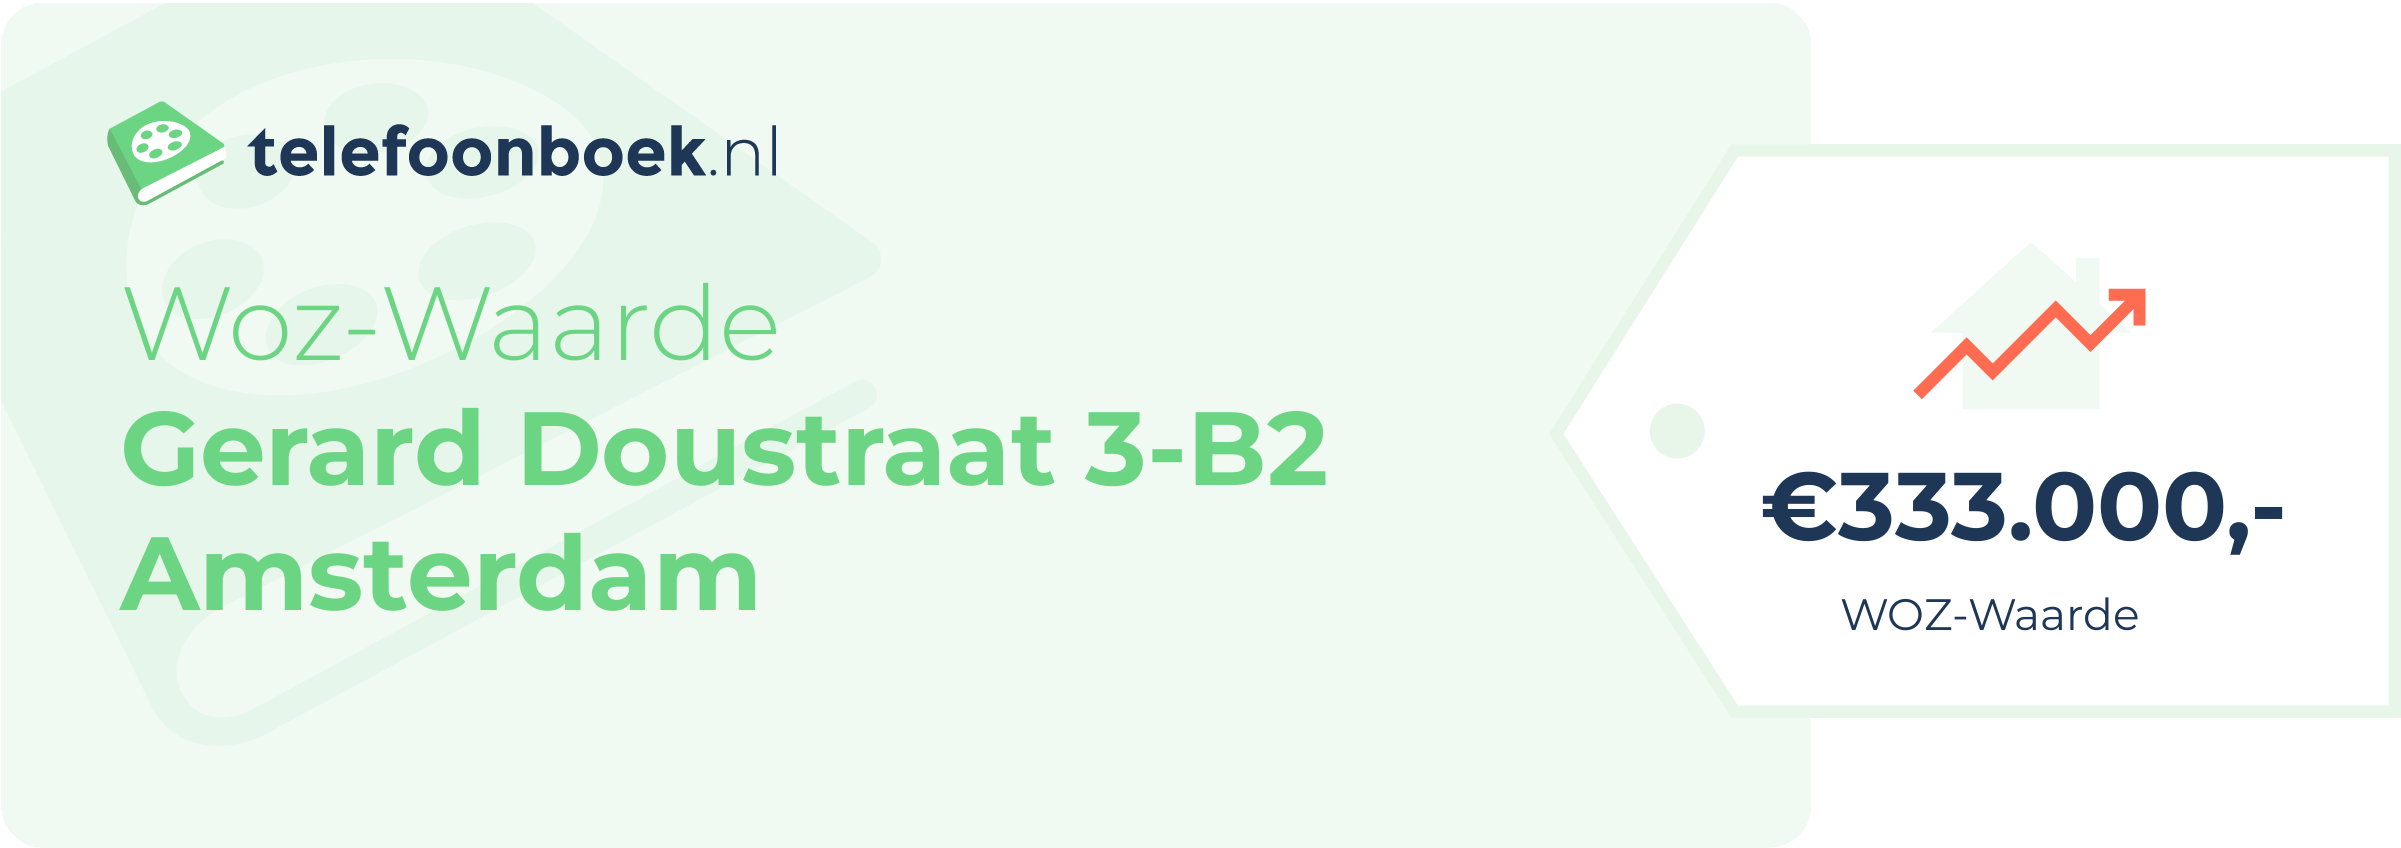 WOZ-waarde Gerard Doustraat 3-B2 Amsterdam